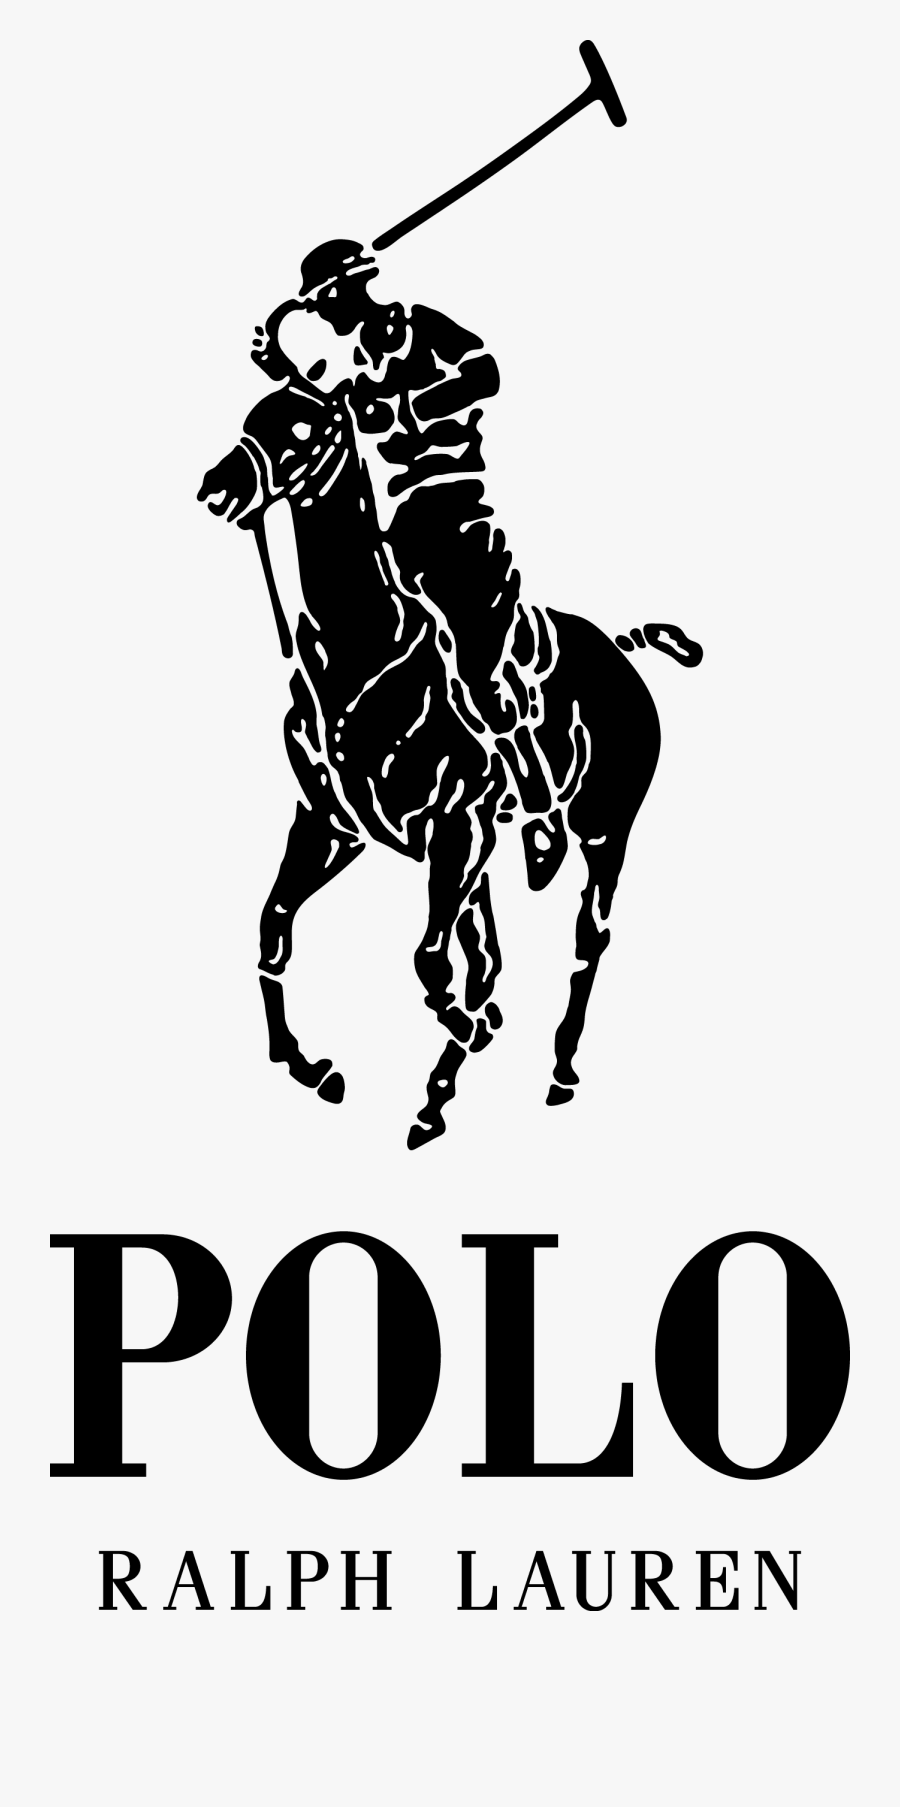 Polo Ralph Lauren Logo Clipart - Polo Ralph Lauren Logo, Transparent Clipart